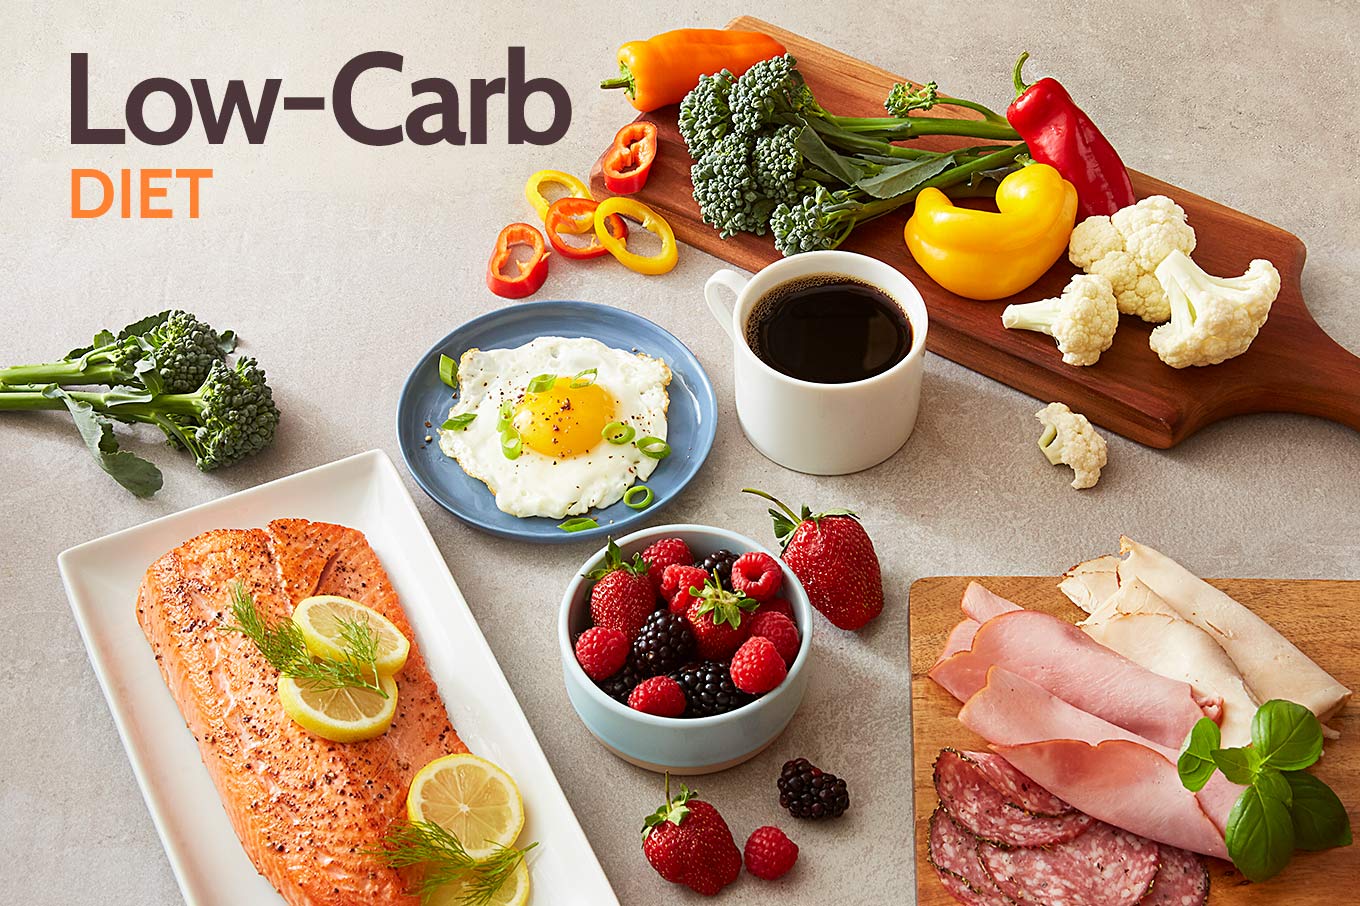 Iniciando uma dieta baixa em carboidratos